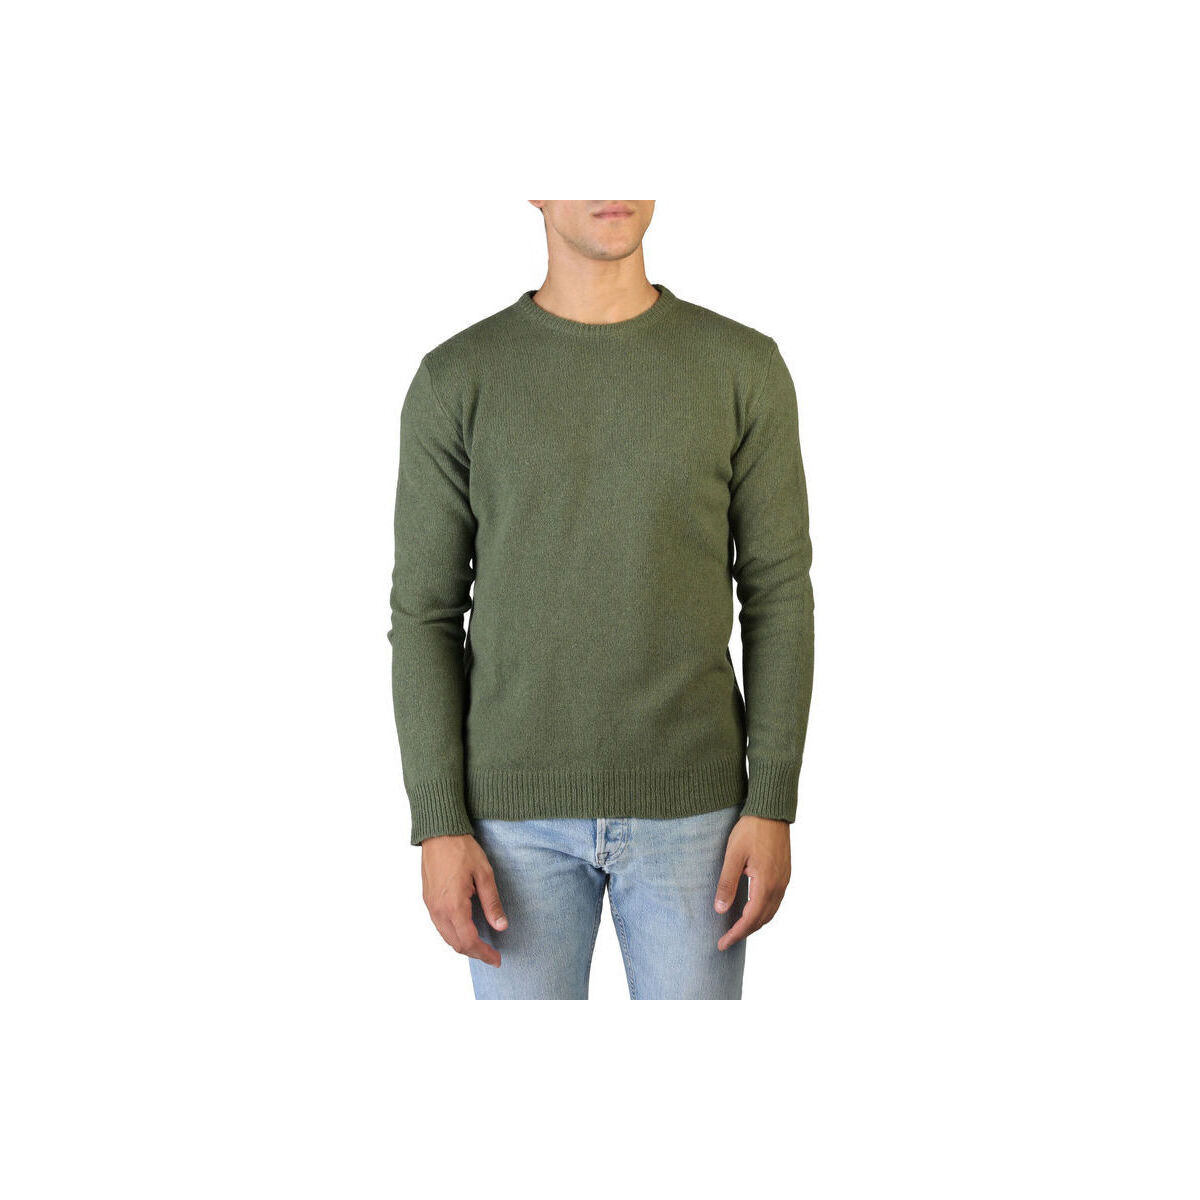 Textil Muži Svetry 100% Cashmere Jersey Zelená